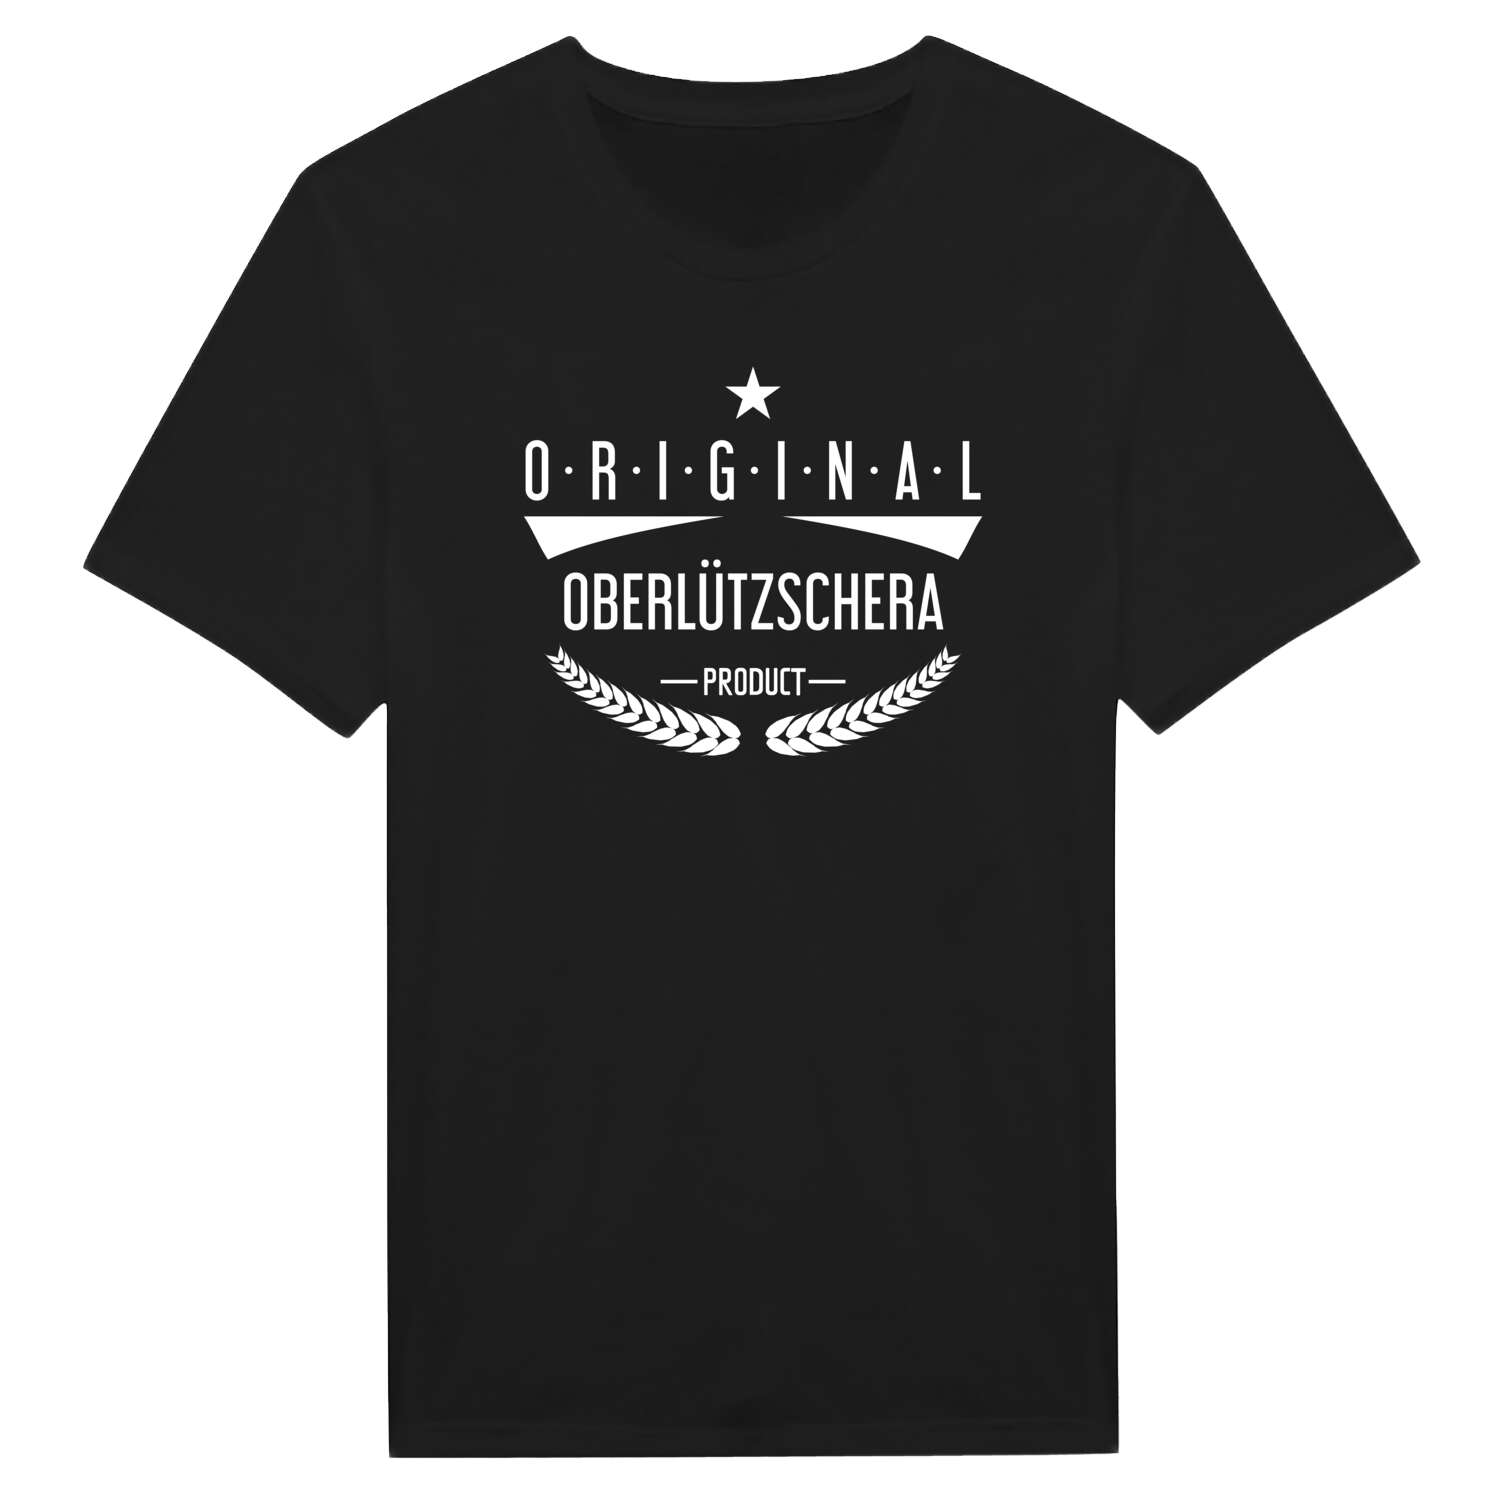 Oberlützschera T-Shirt »Original Product«